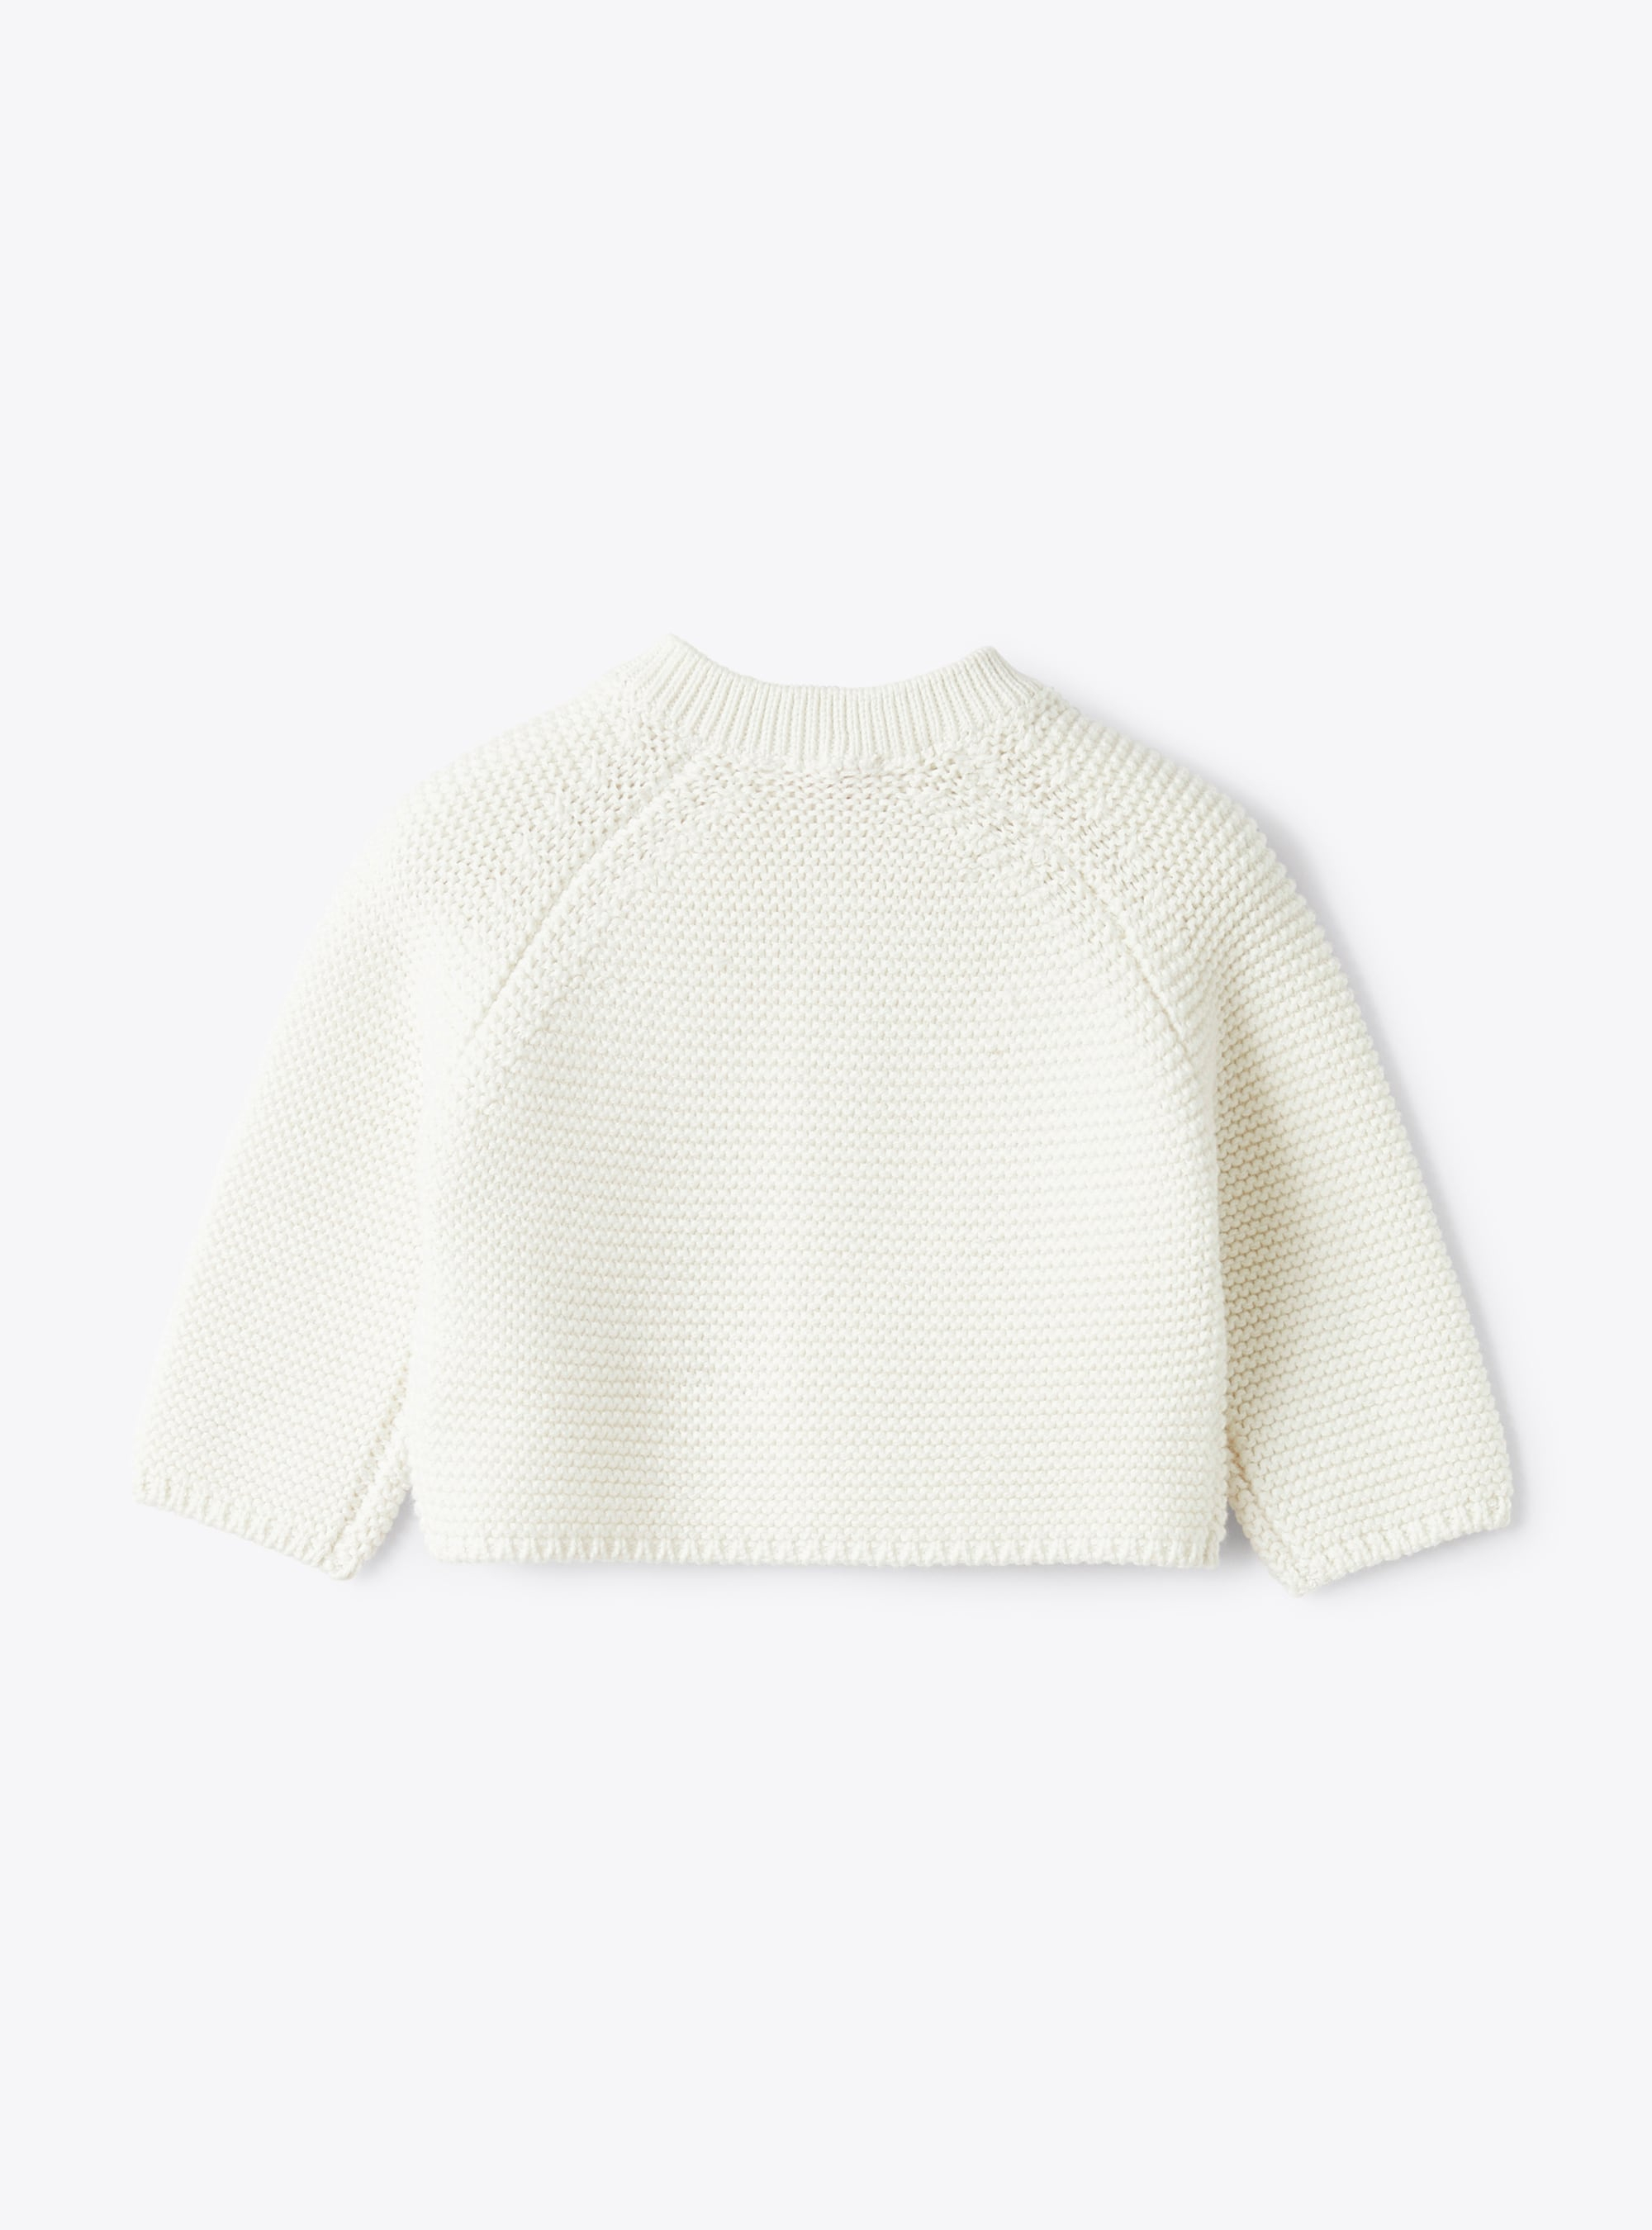 Golfino tricot in cotone organico bianco - Bianco | Il Gufo